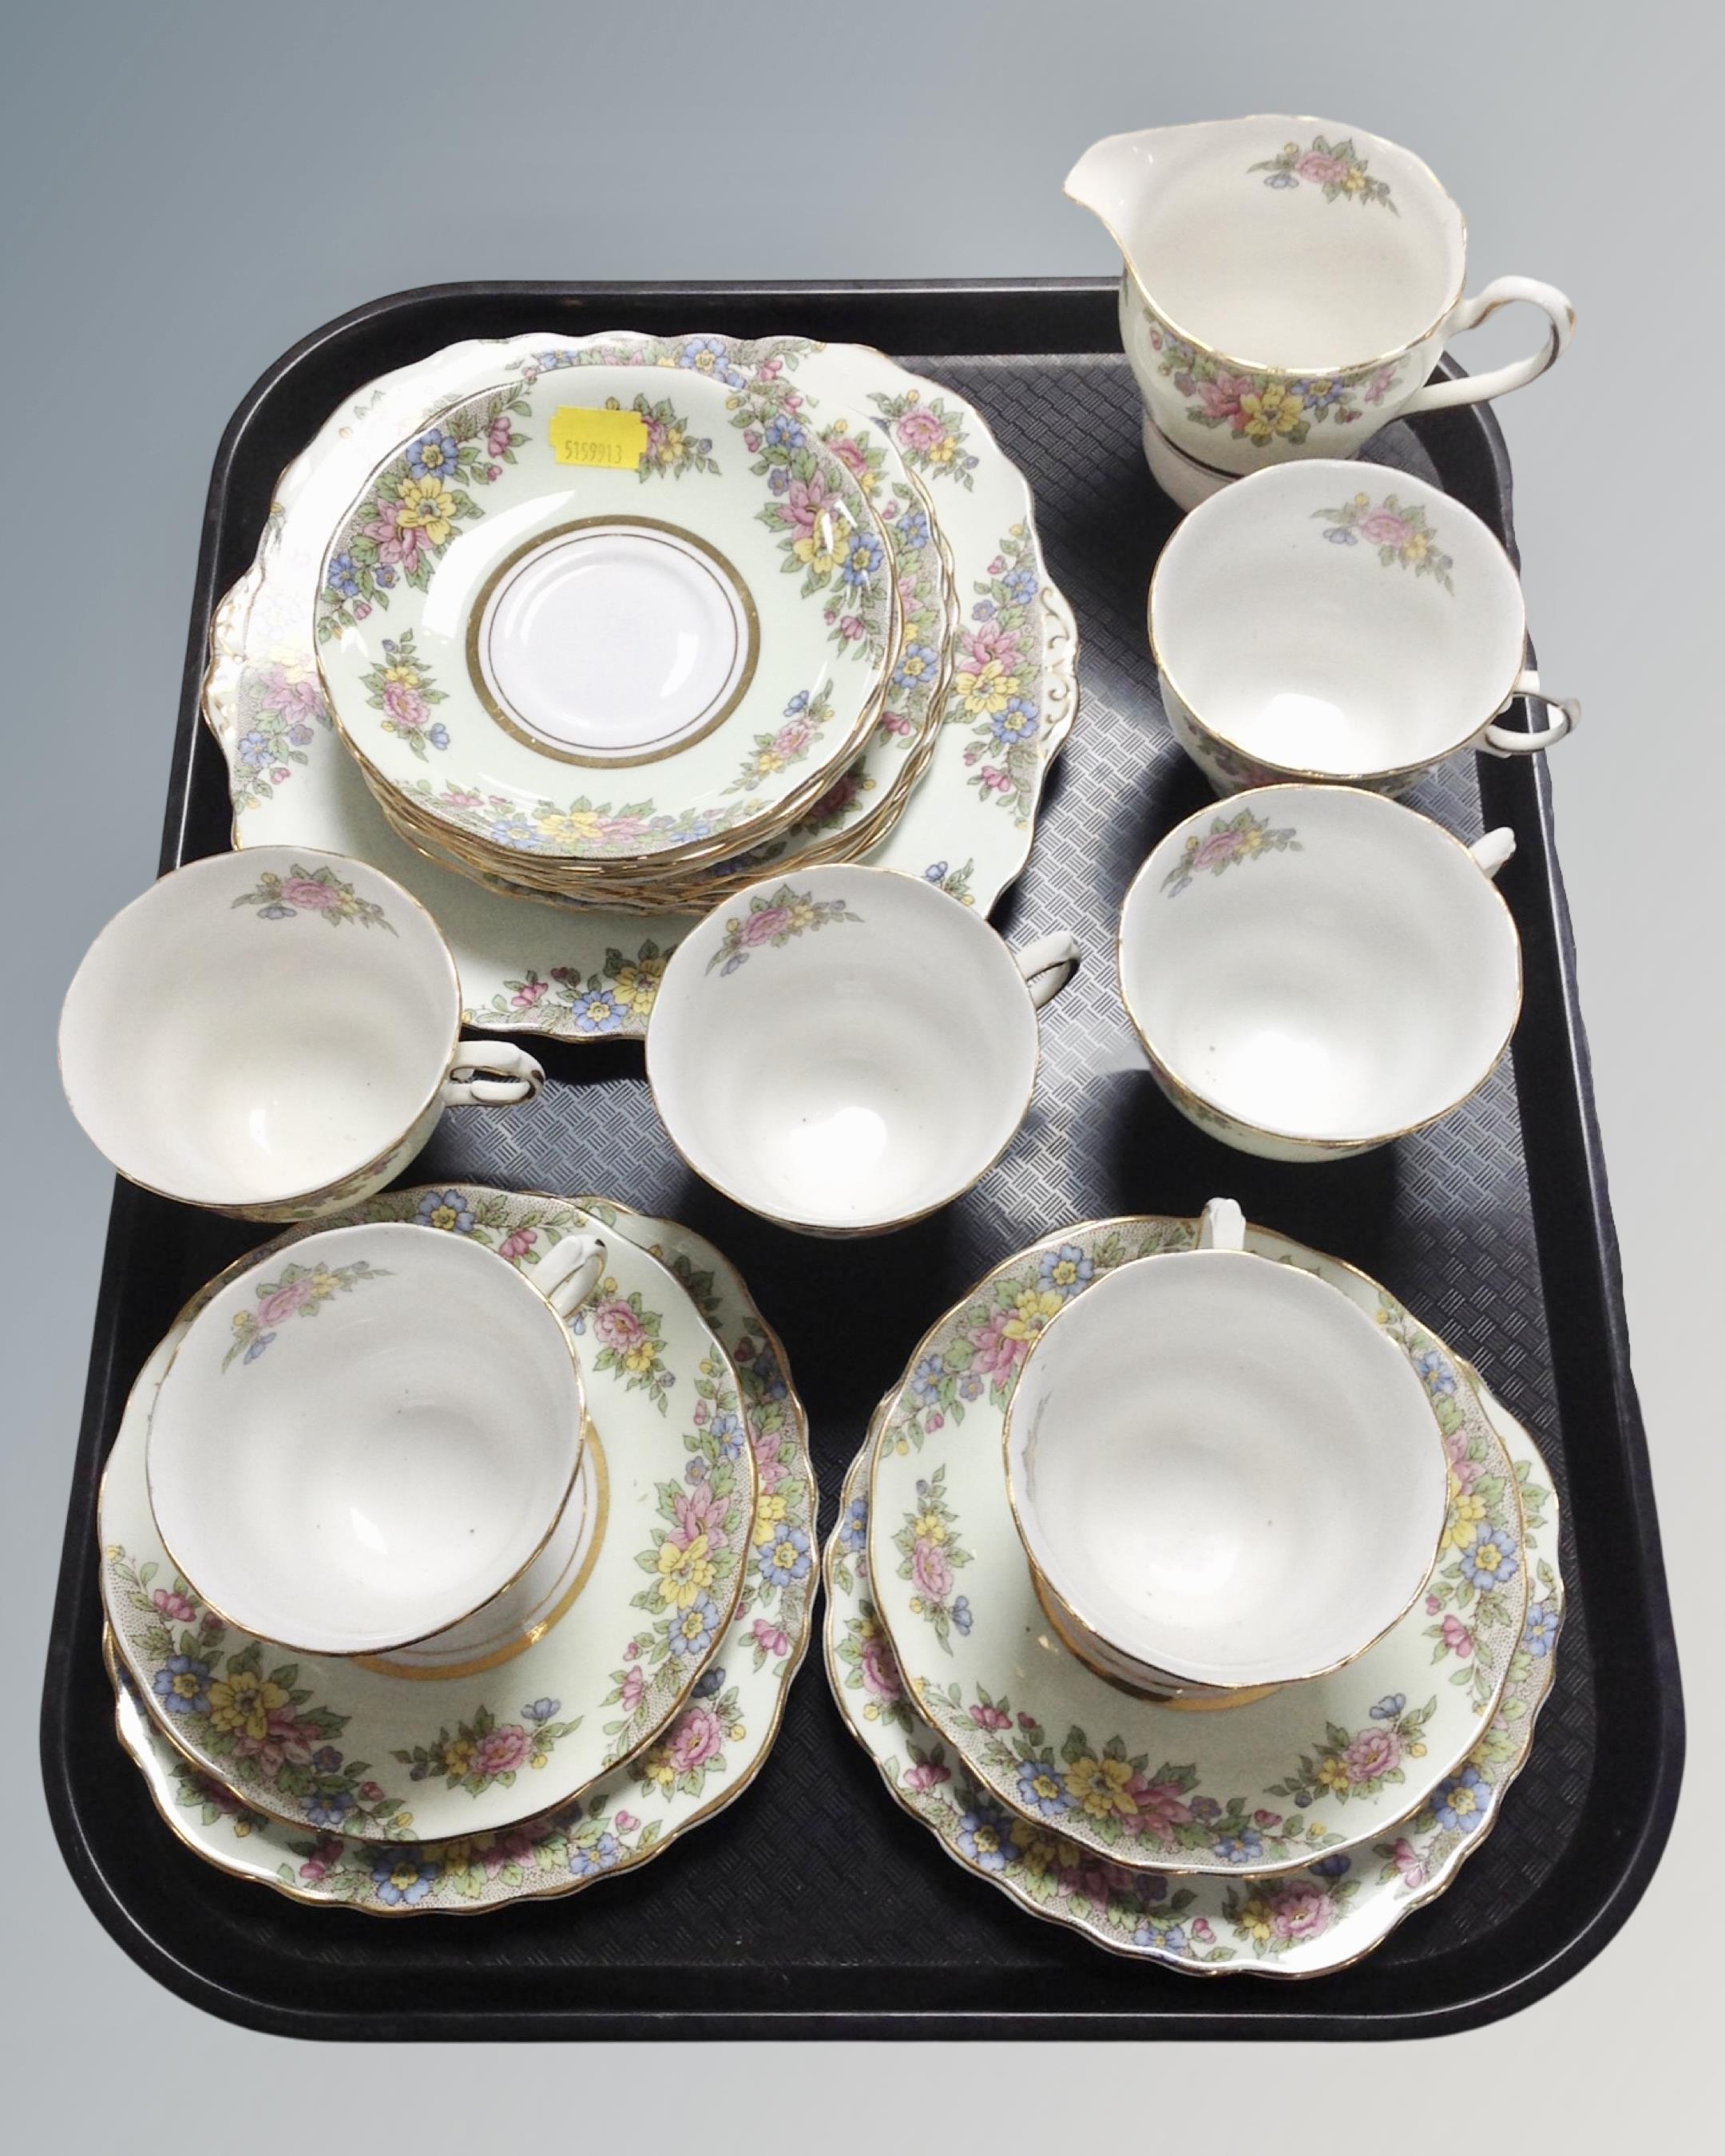 A 20 piece Colclough floral patterned bone china tea service.